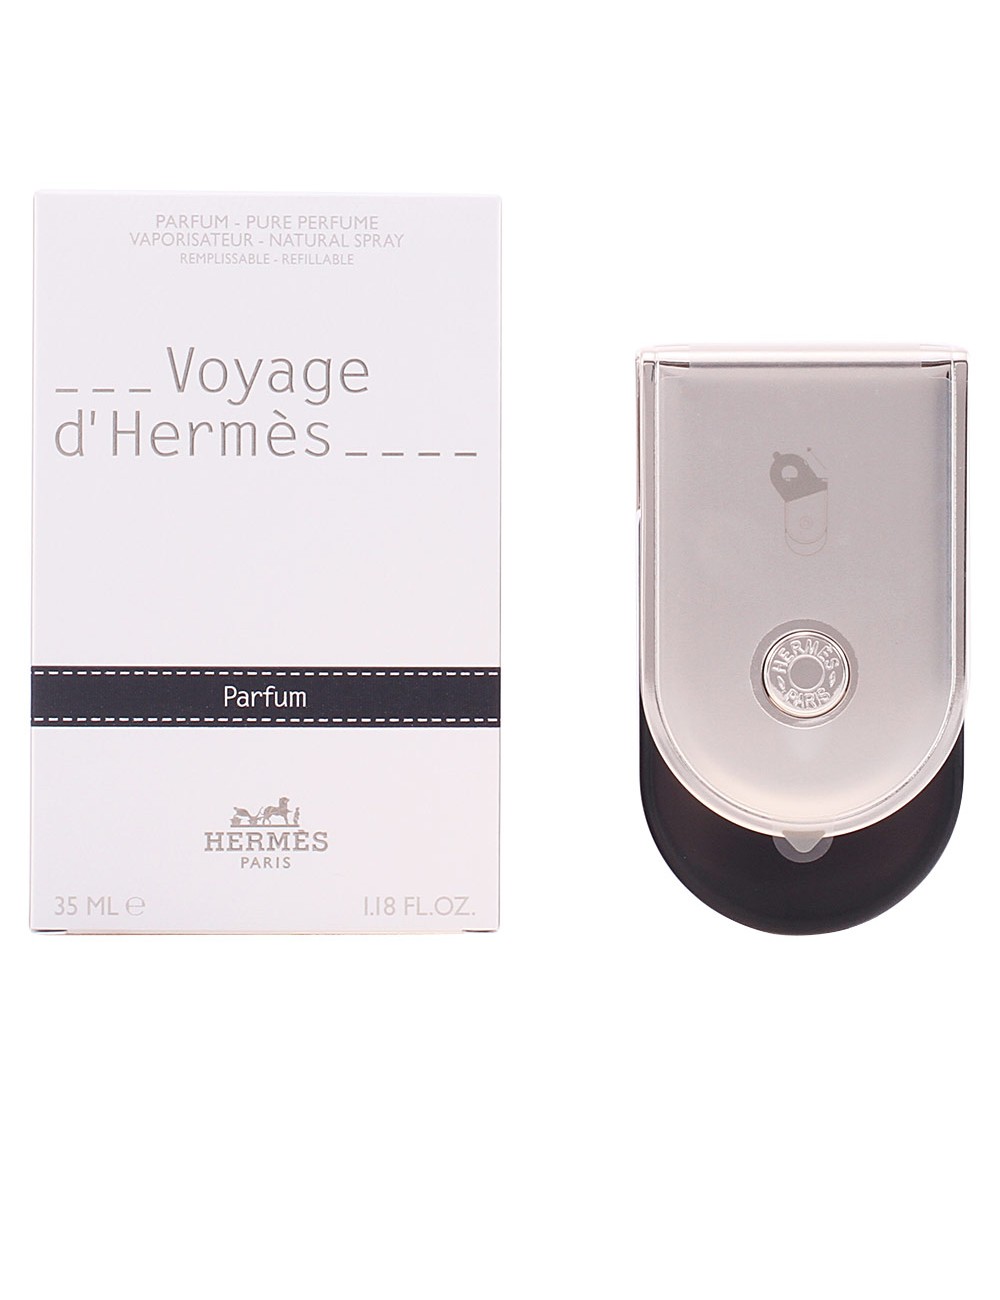 VOYAGE D'HERMÈS parfum vaporisateur 35 ml NE37067